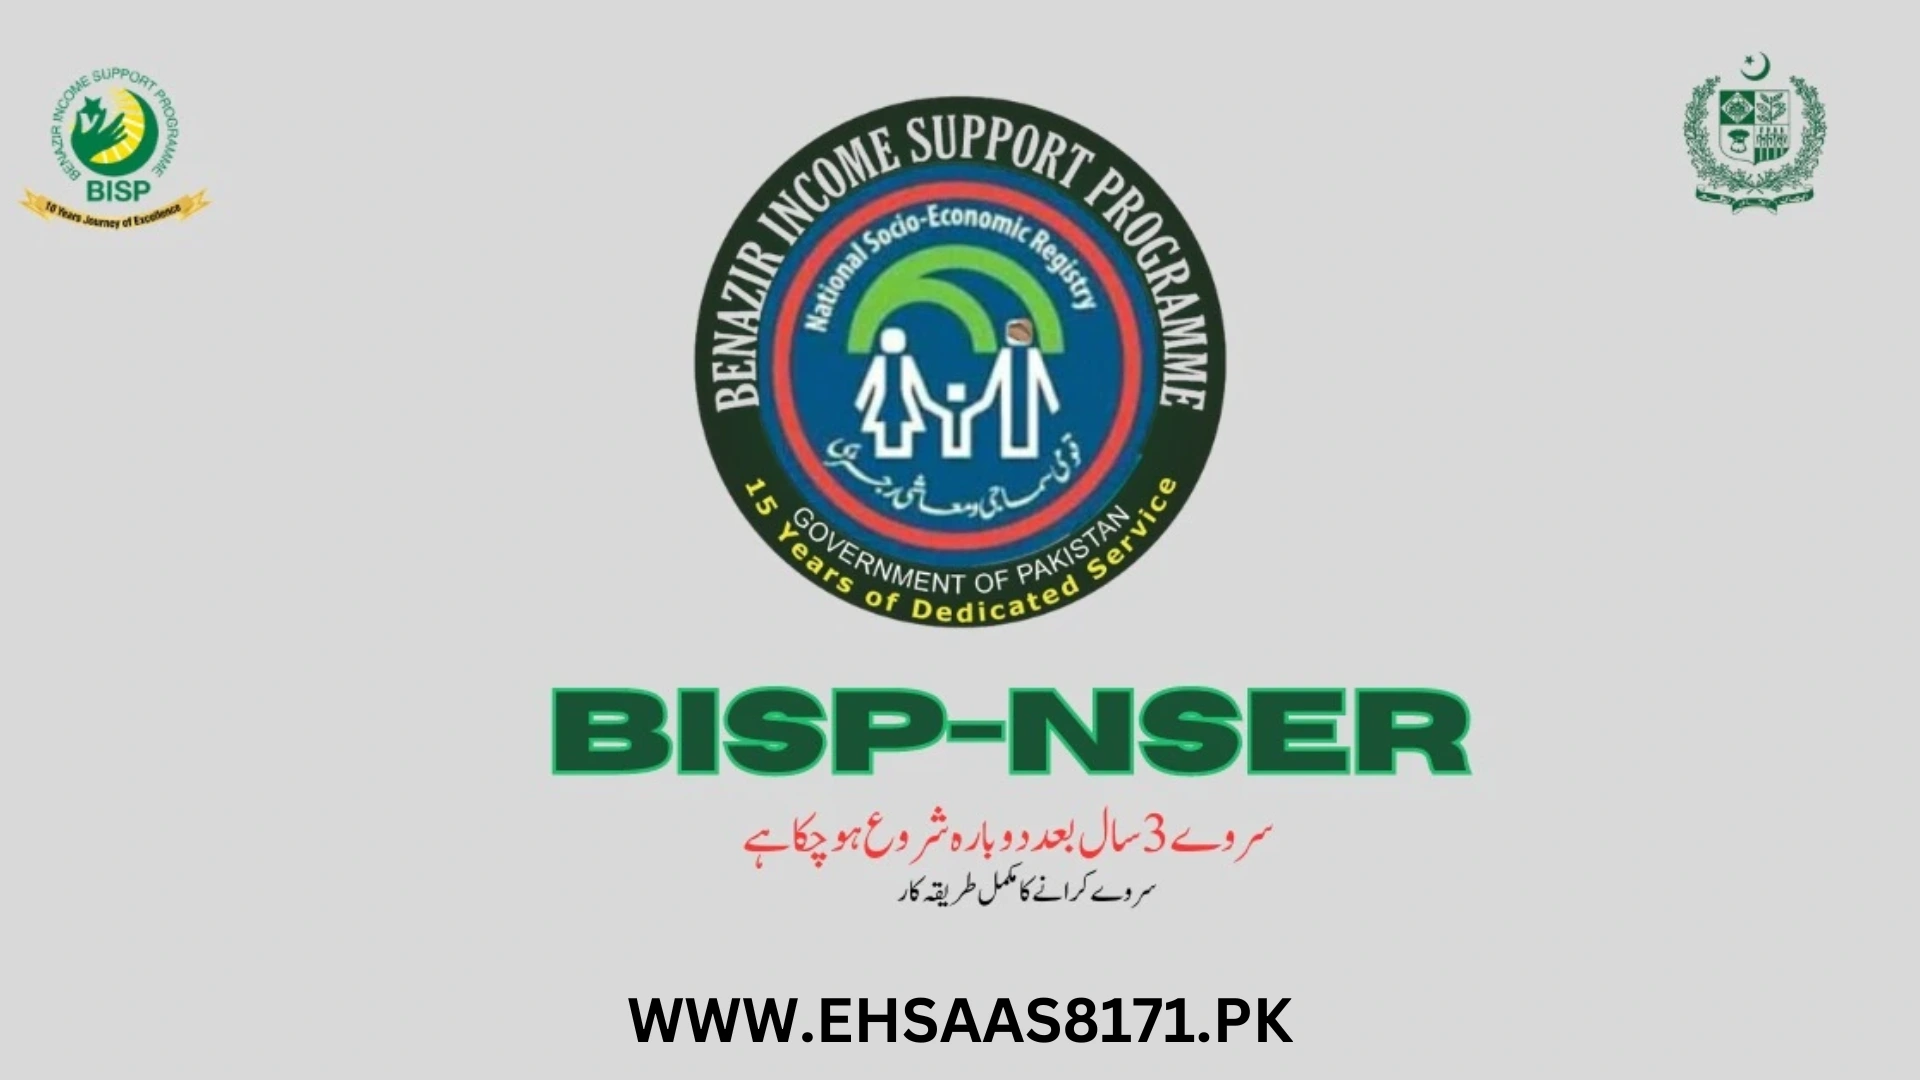 NSER Survey and BISP Ehsaas Program